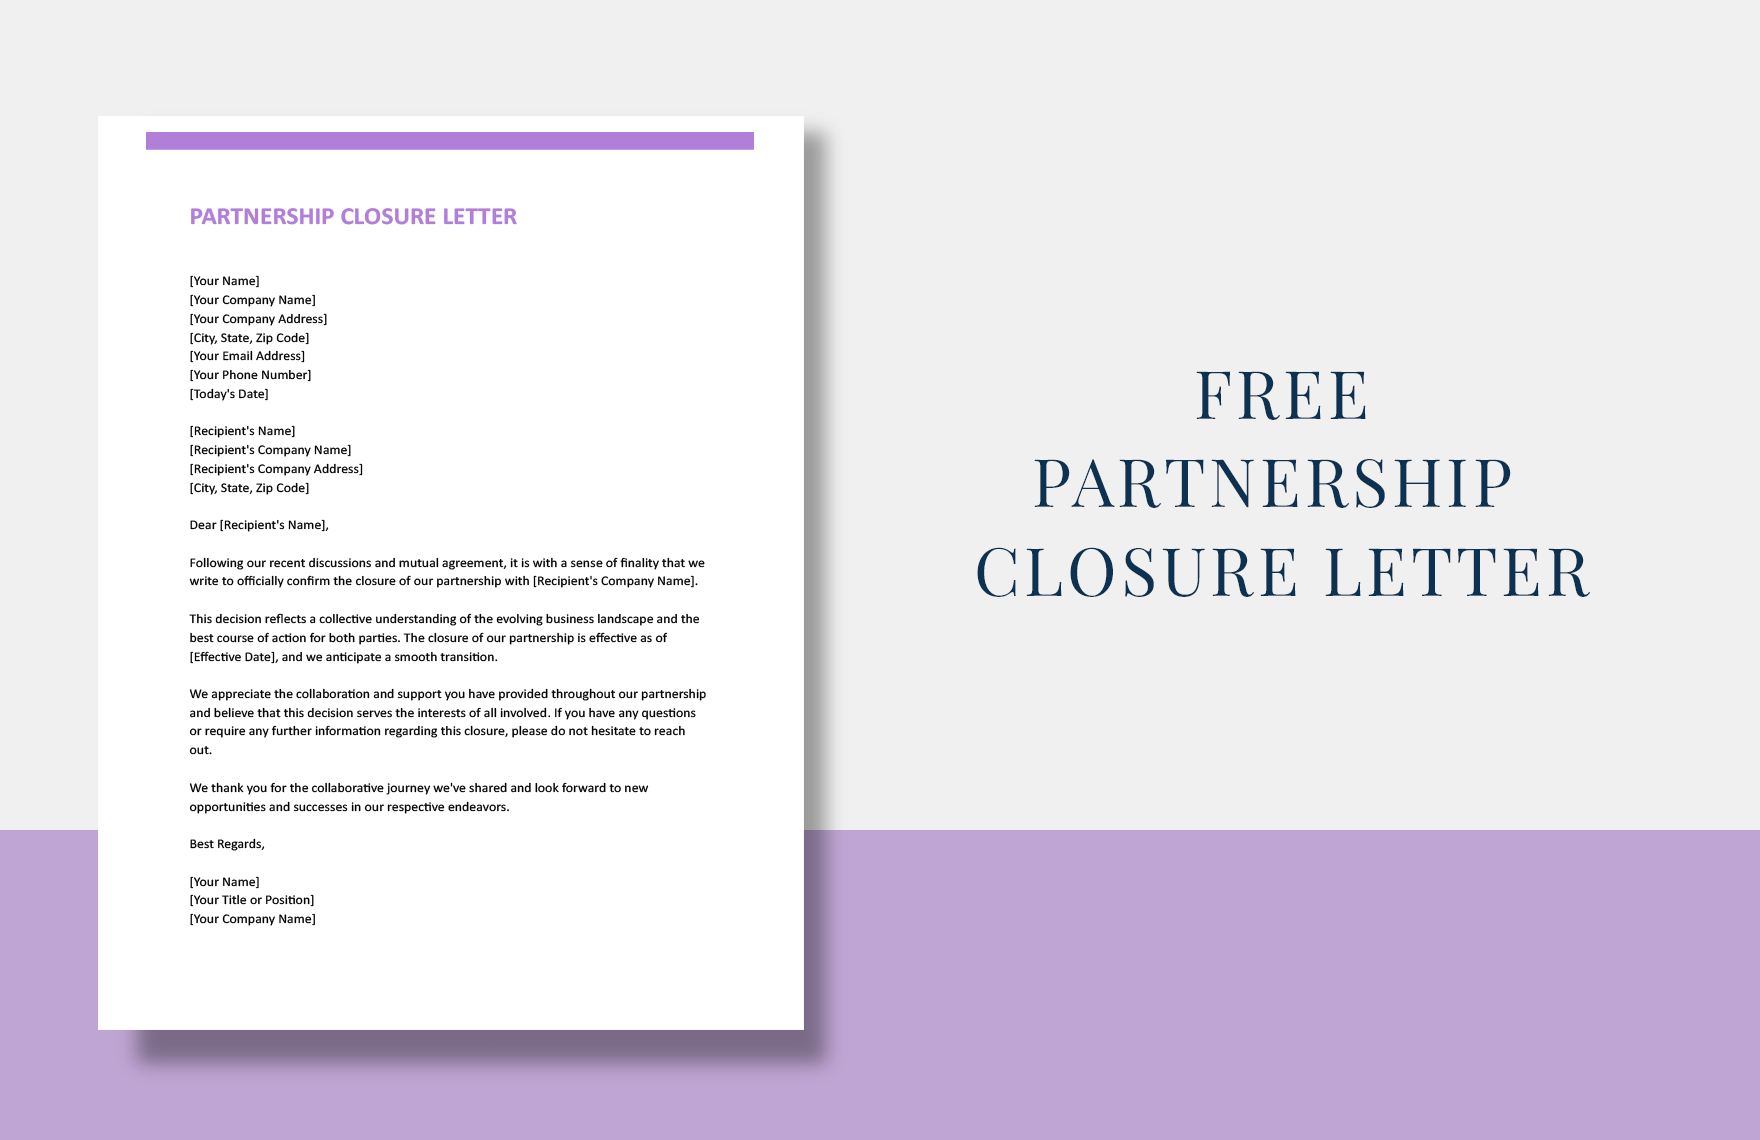 Free Partnership Closure Letter